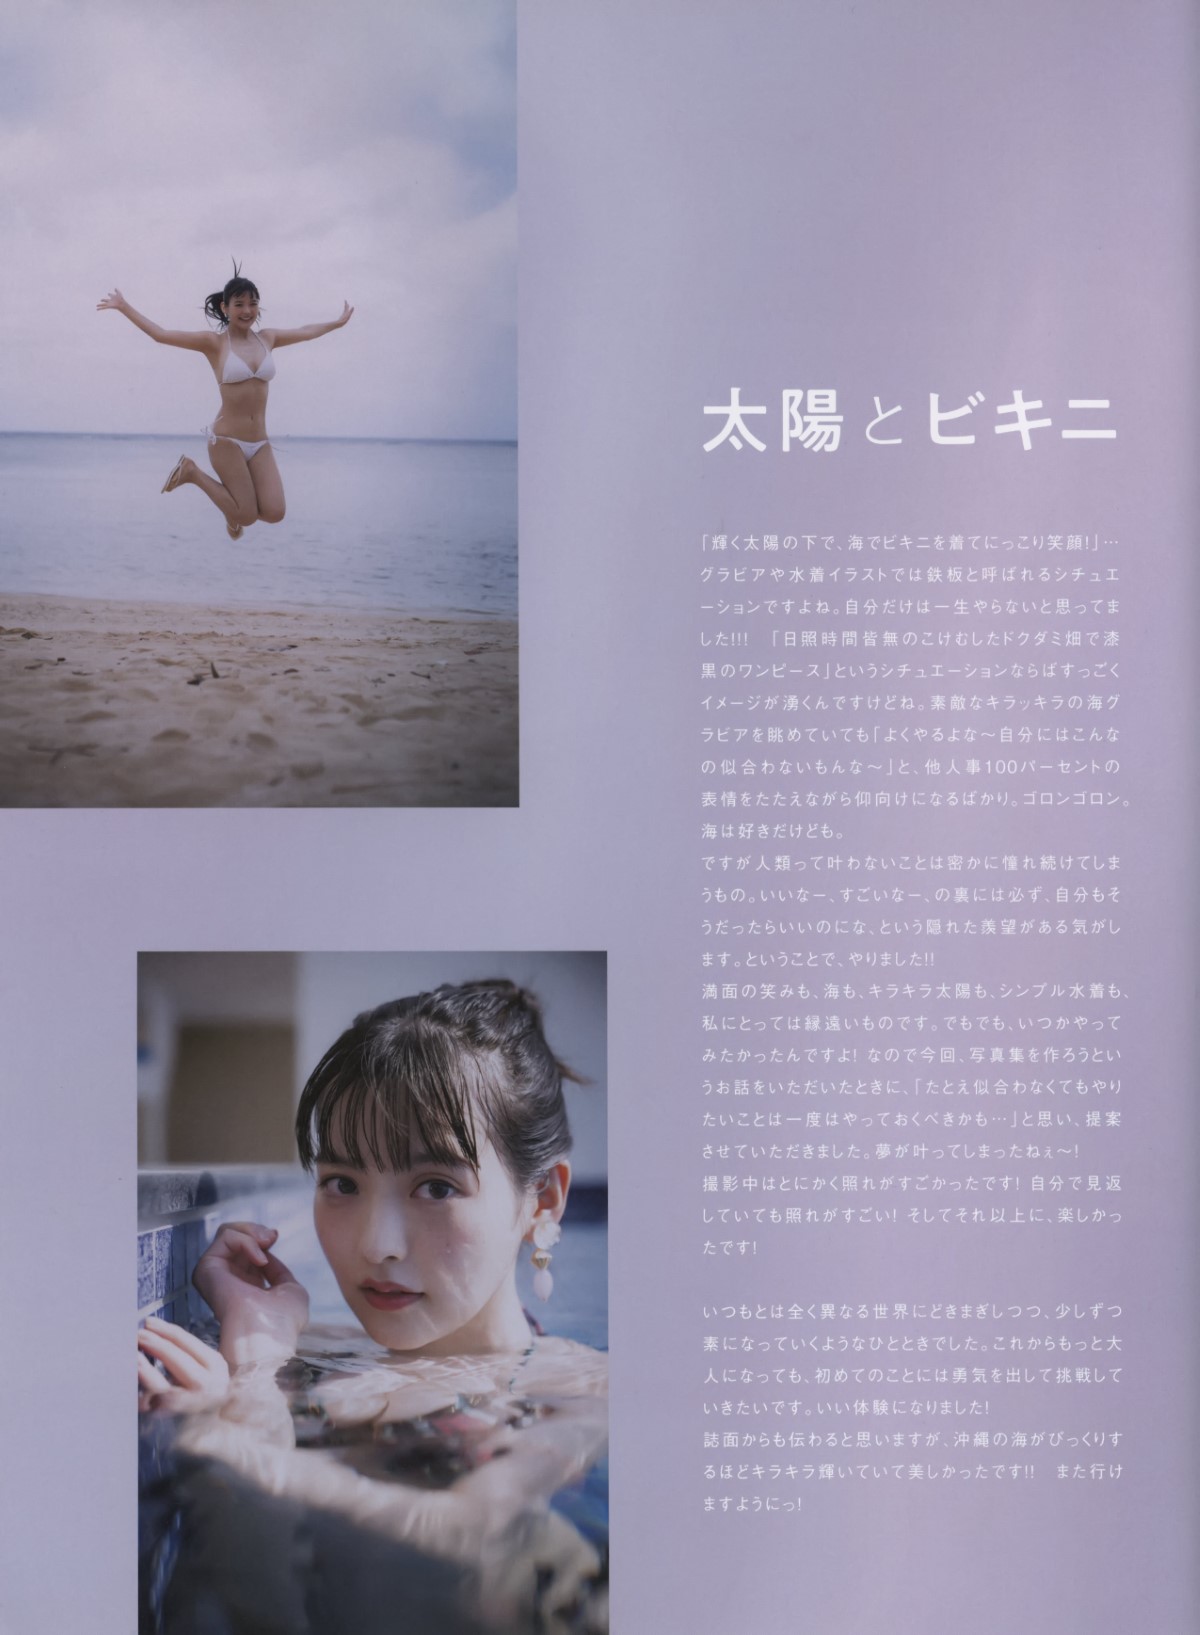 Photobook 2022 11 11 Sumire Uesaka 上坂すみれ Violet Dream 0003 8761570089.jpg